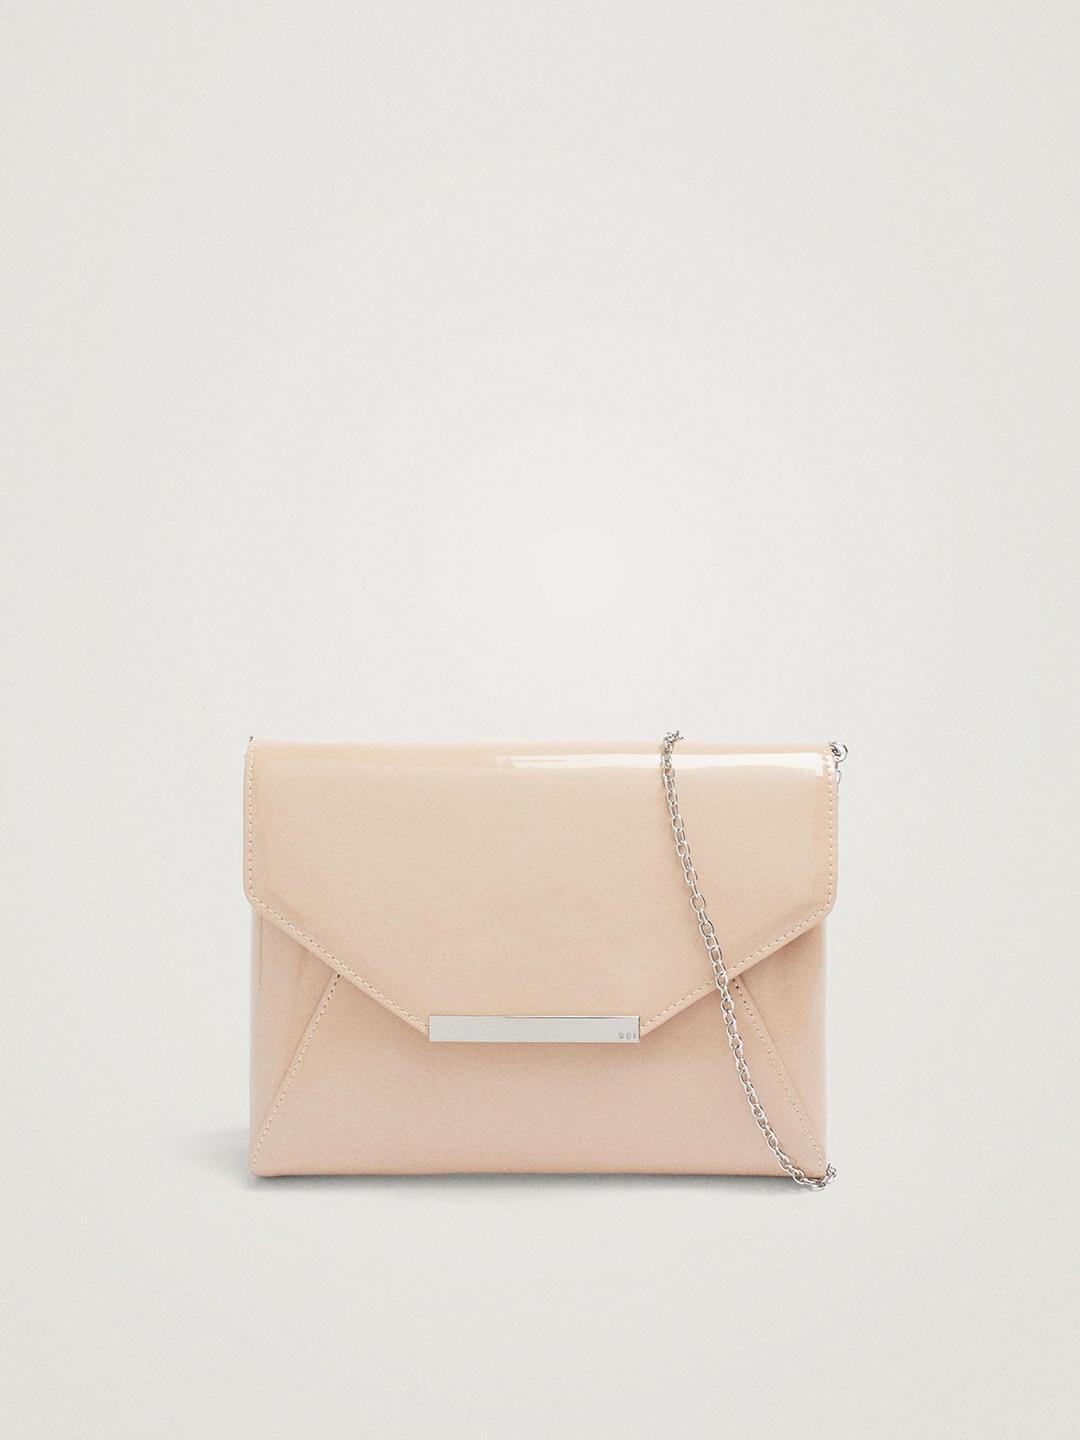 parfois envelope clutch with chain strap